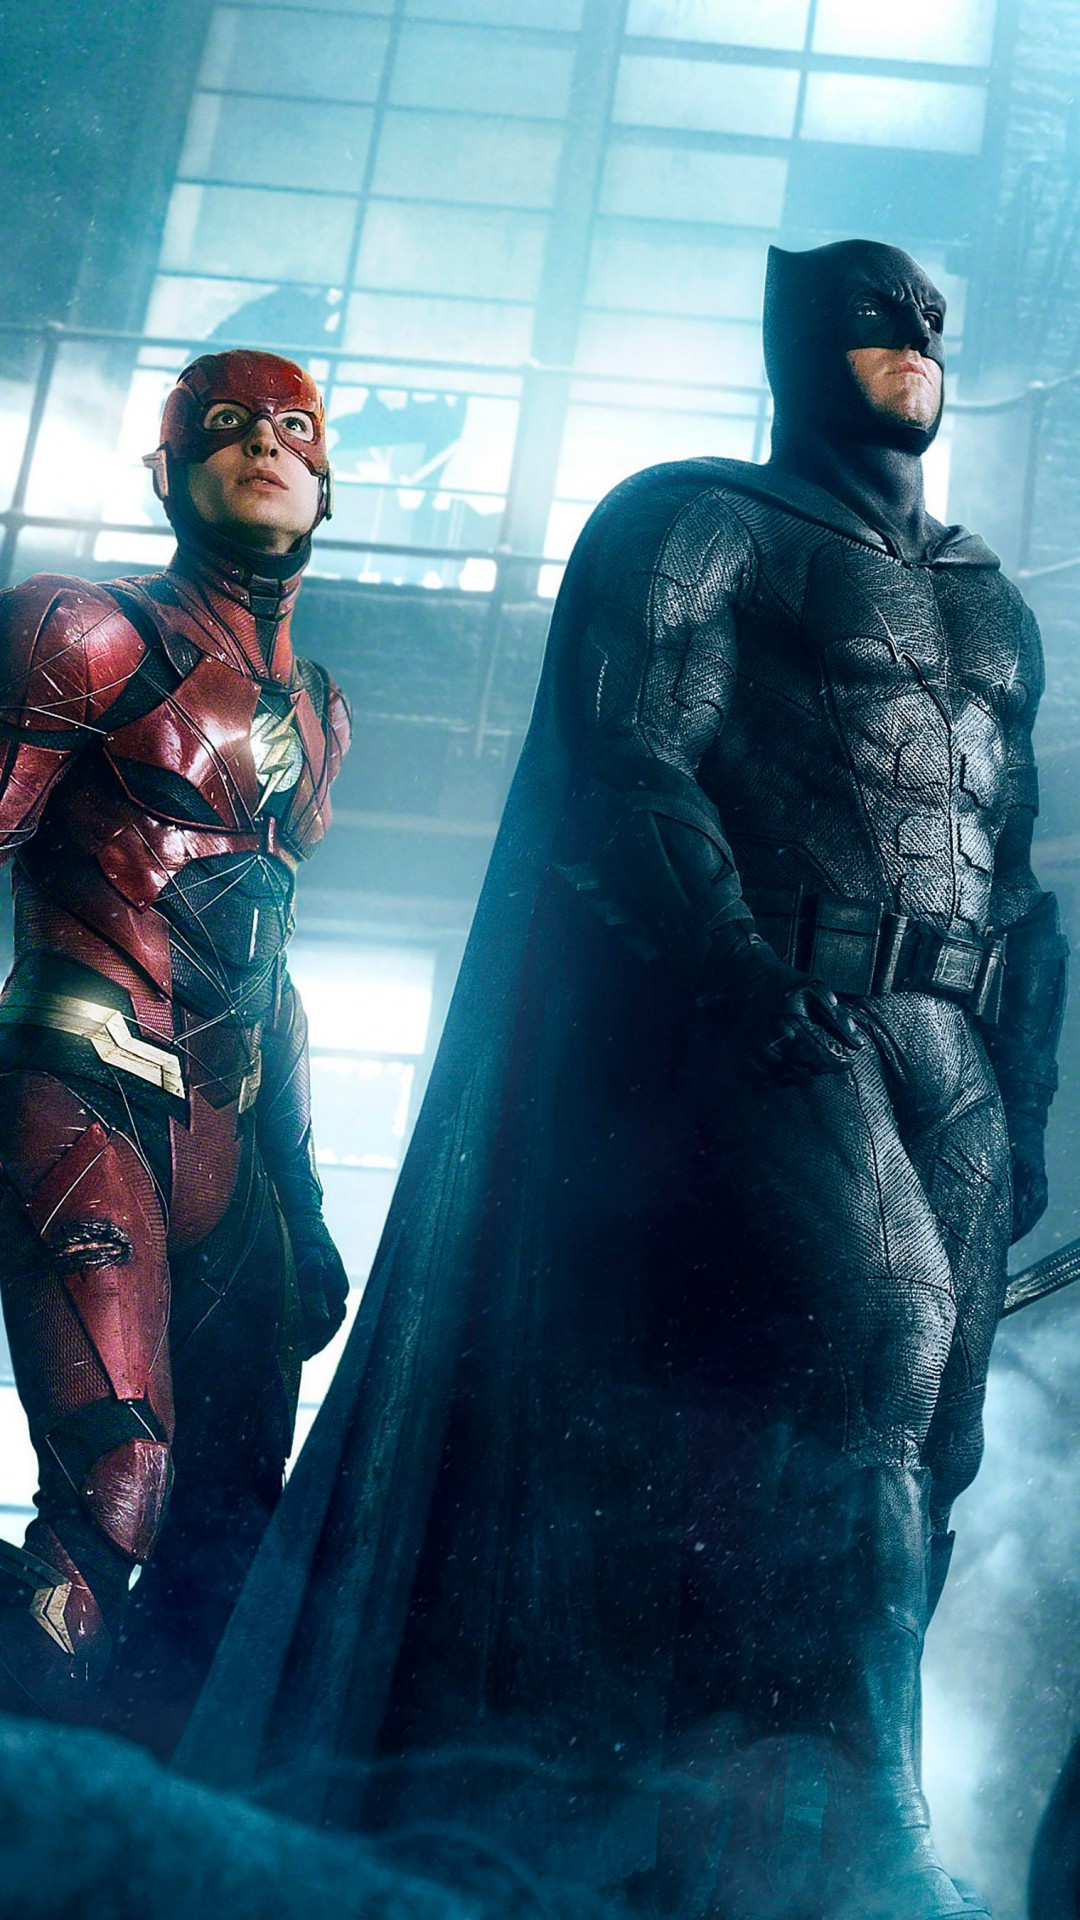 fondo de pantalla de la liga de la justicia,hombre murciélago,superhéroe,personaje de ficción,héroe,cg artwork